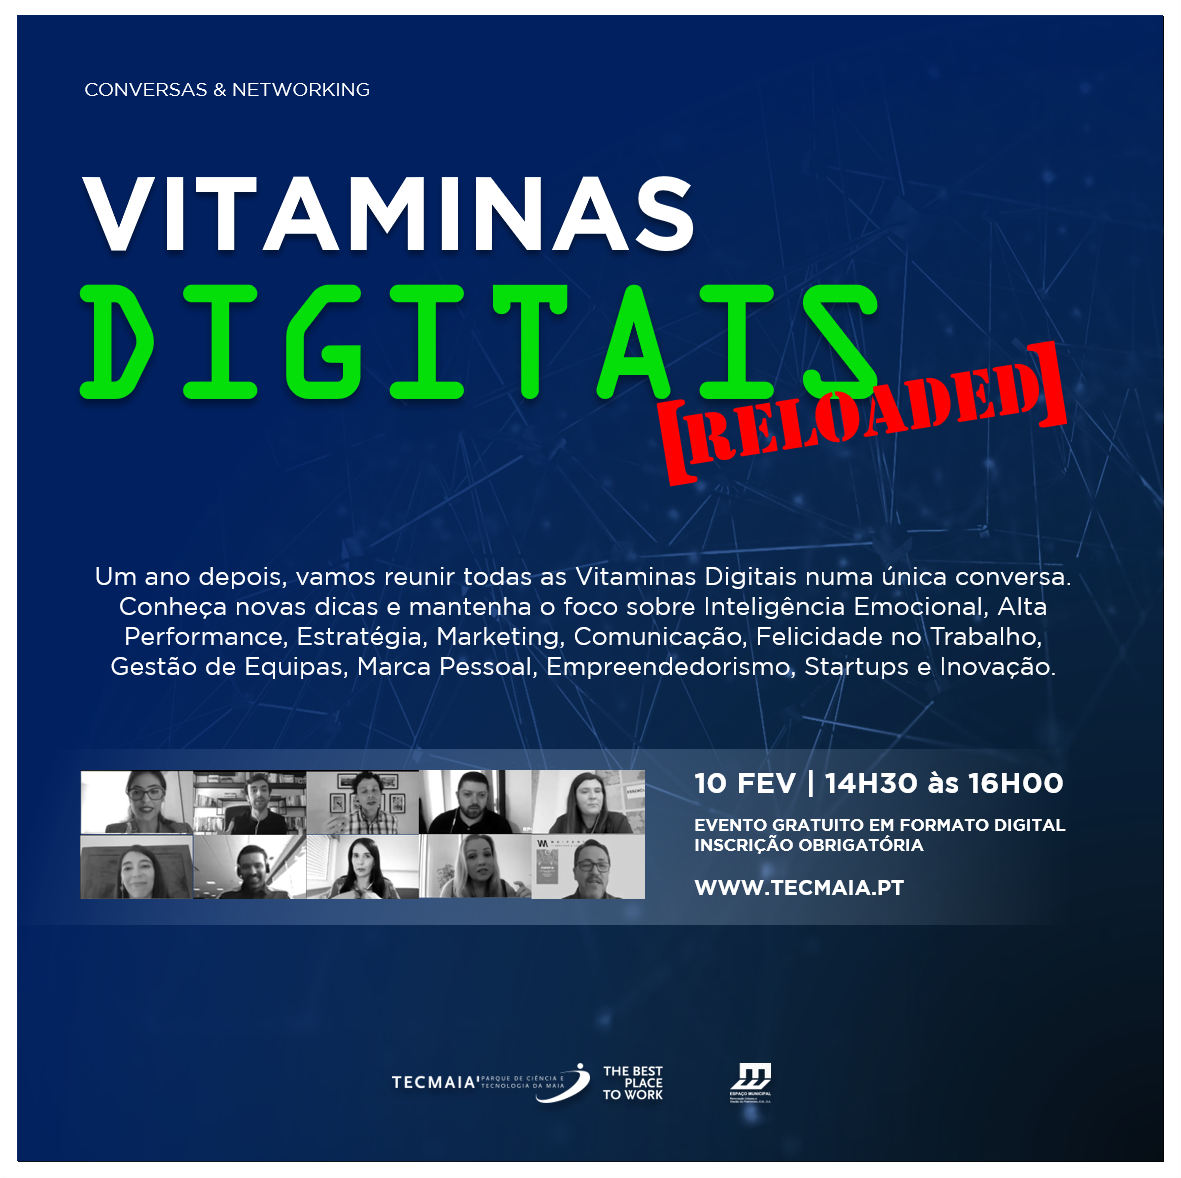 Vitaminas Digitais [RELOADED]